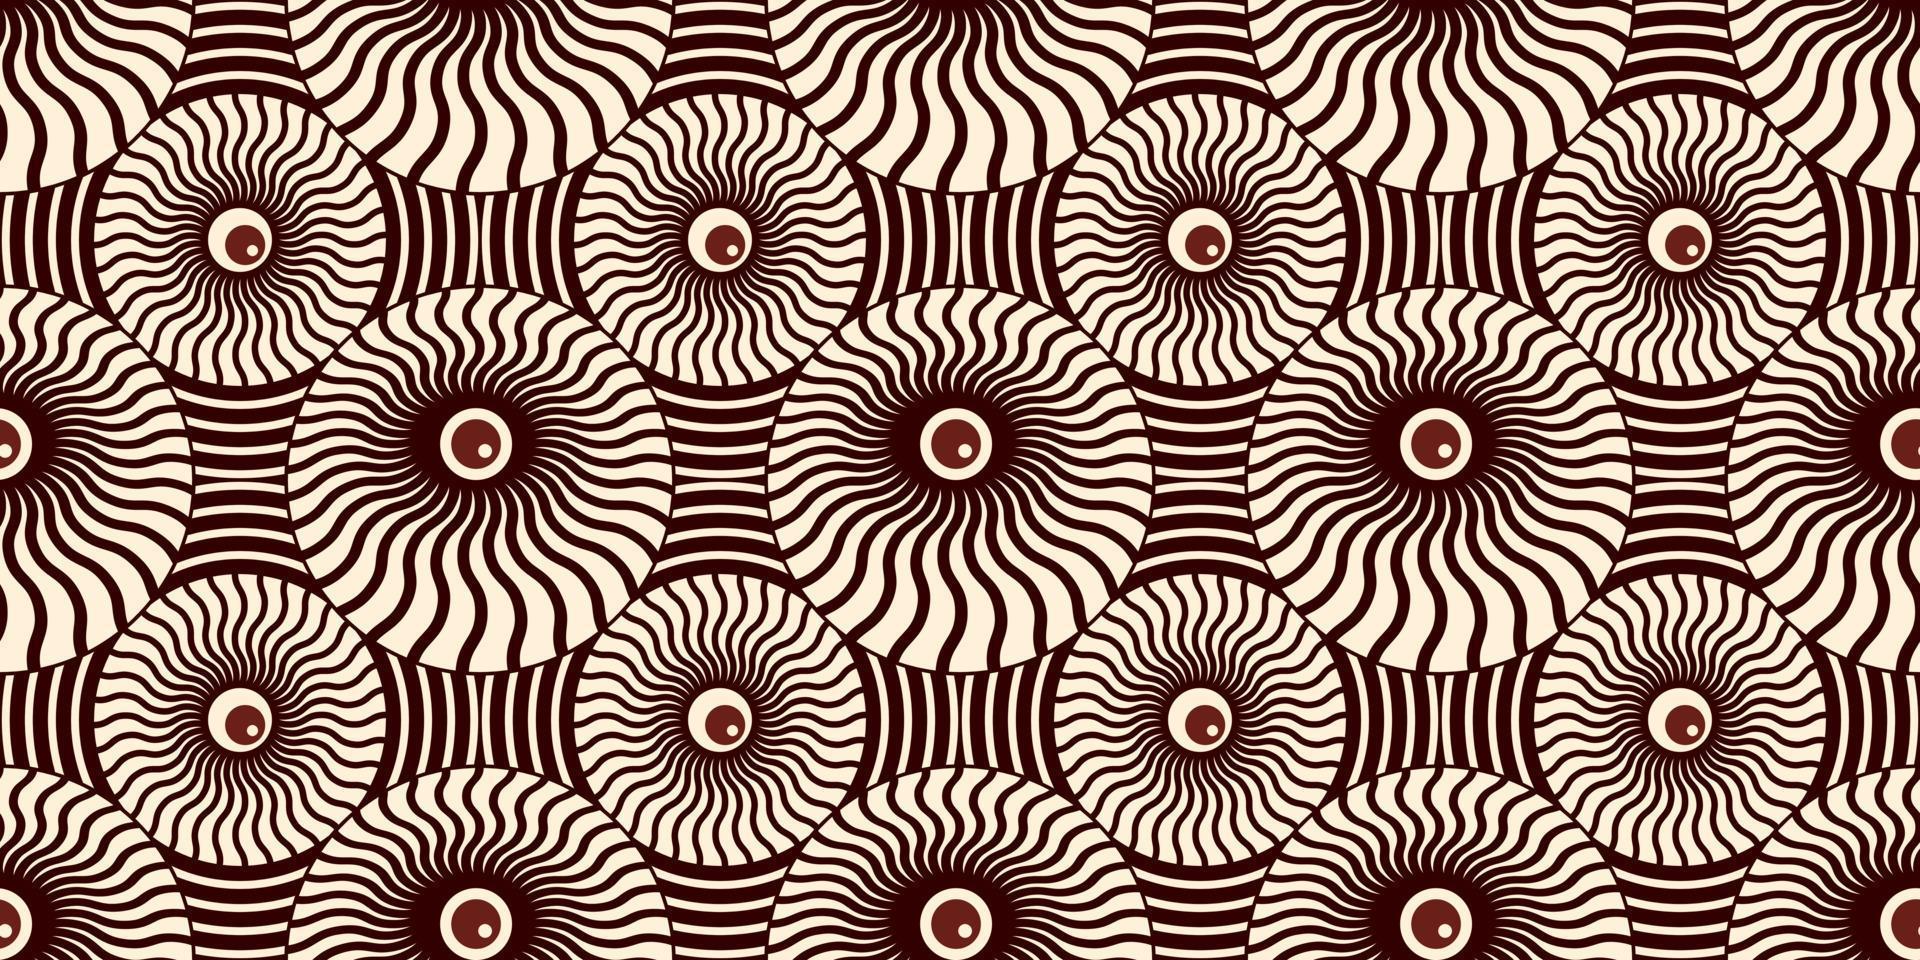 olhos geométricos abstratos em design de padrão sem emenda de sol. ilustração vetorial. eps10 vetor